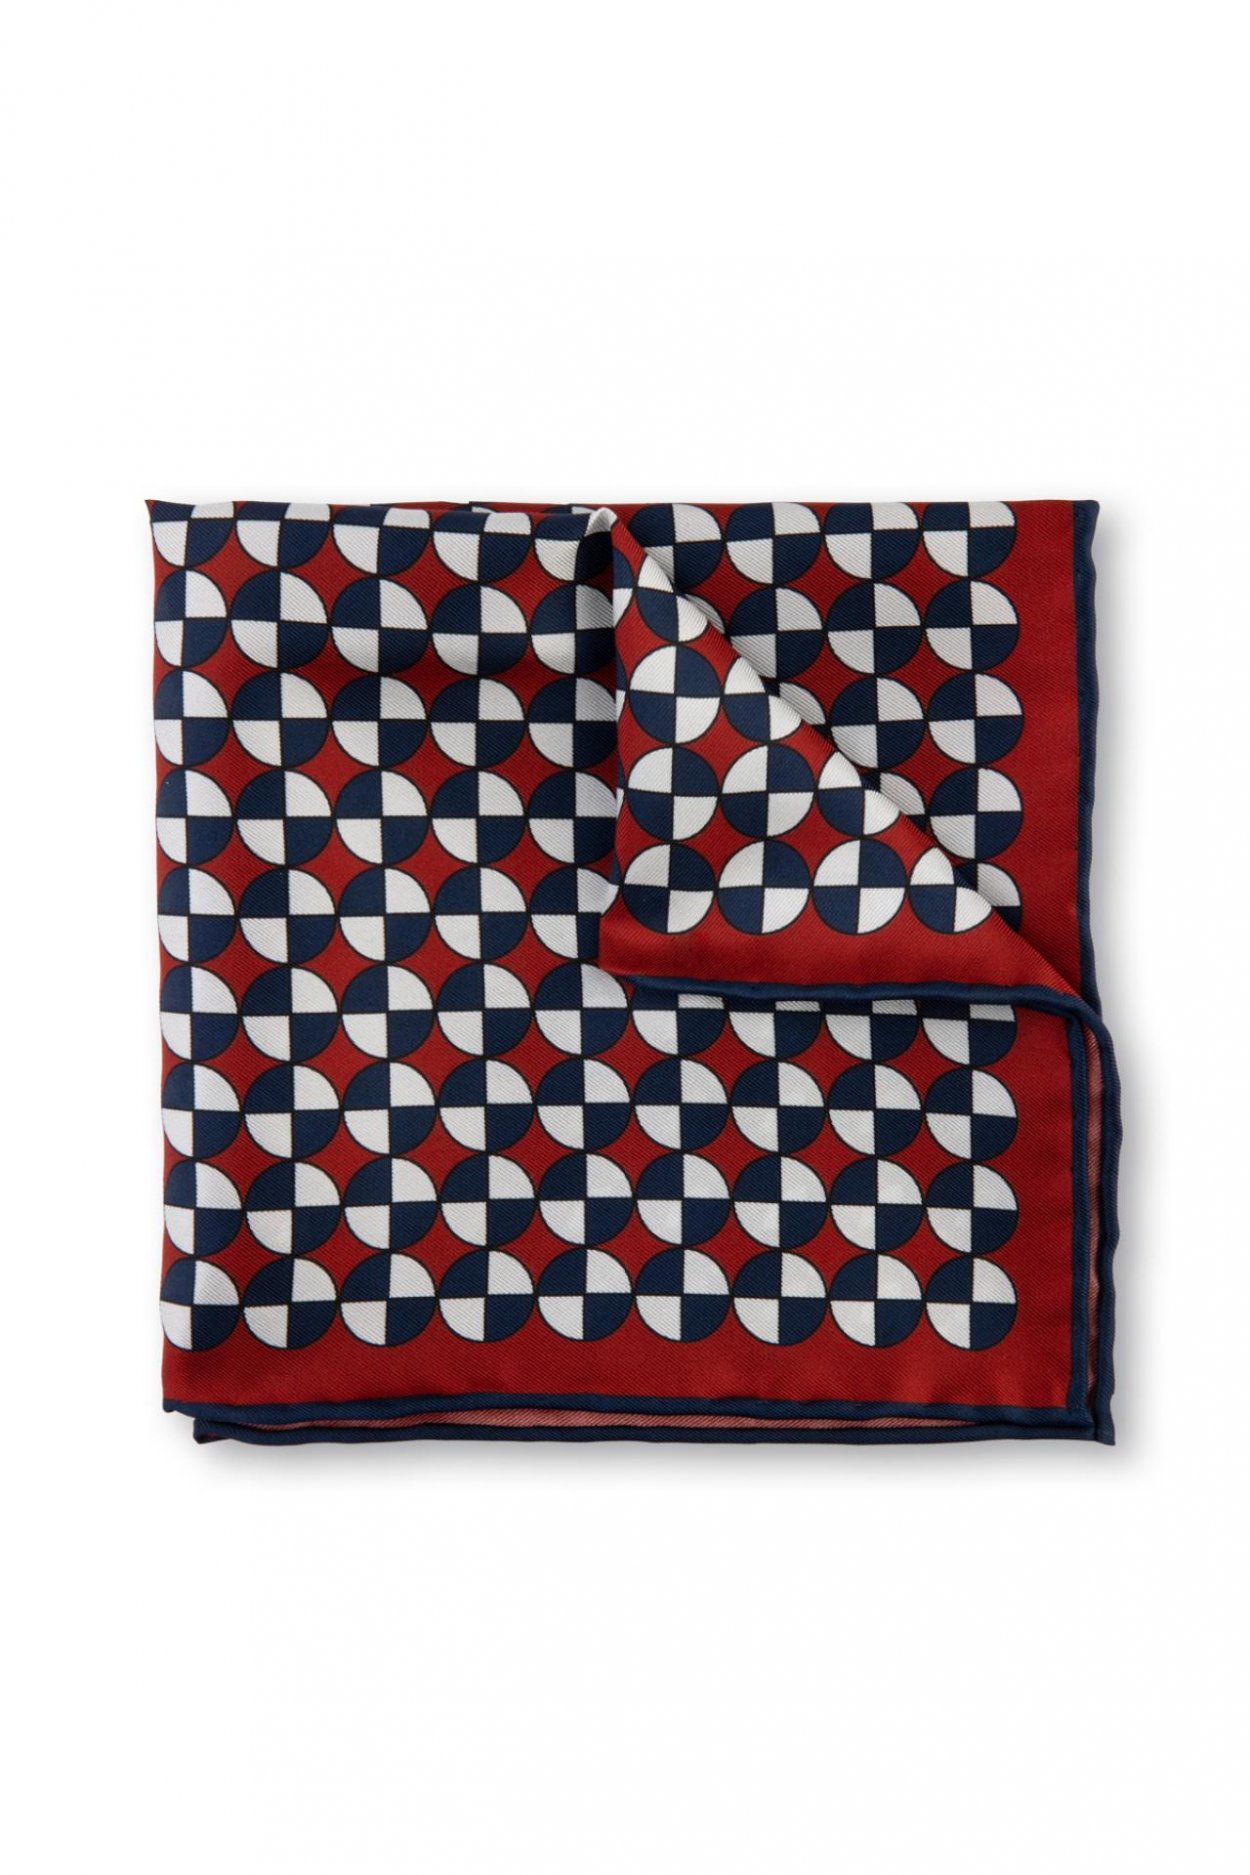 Červenomodrý hedvábný kapesníček s geometrickým vzorem